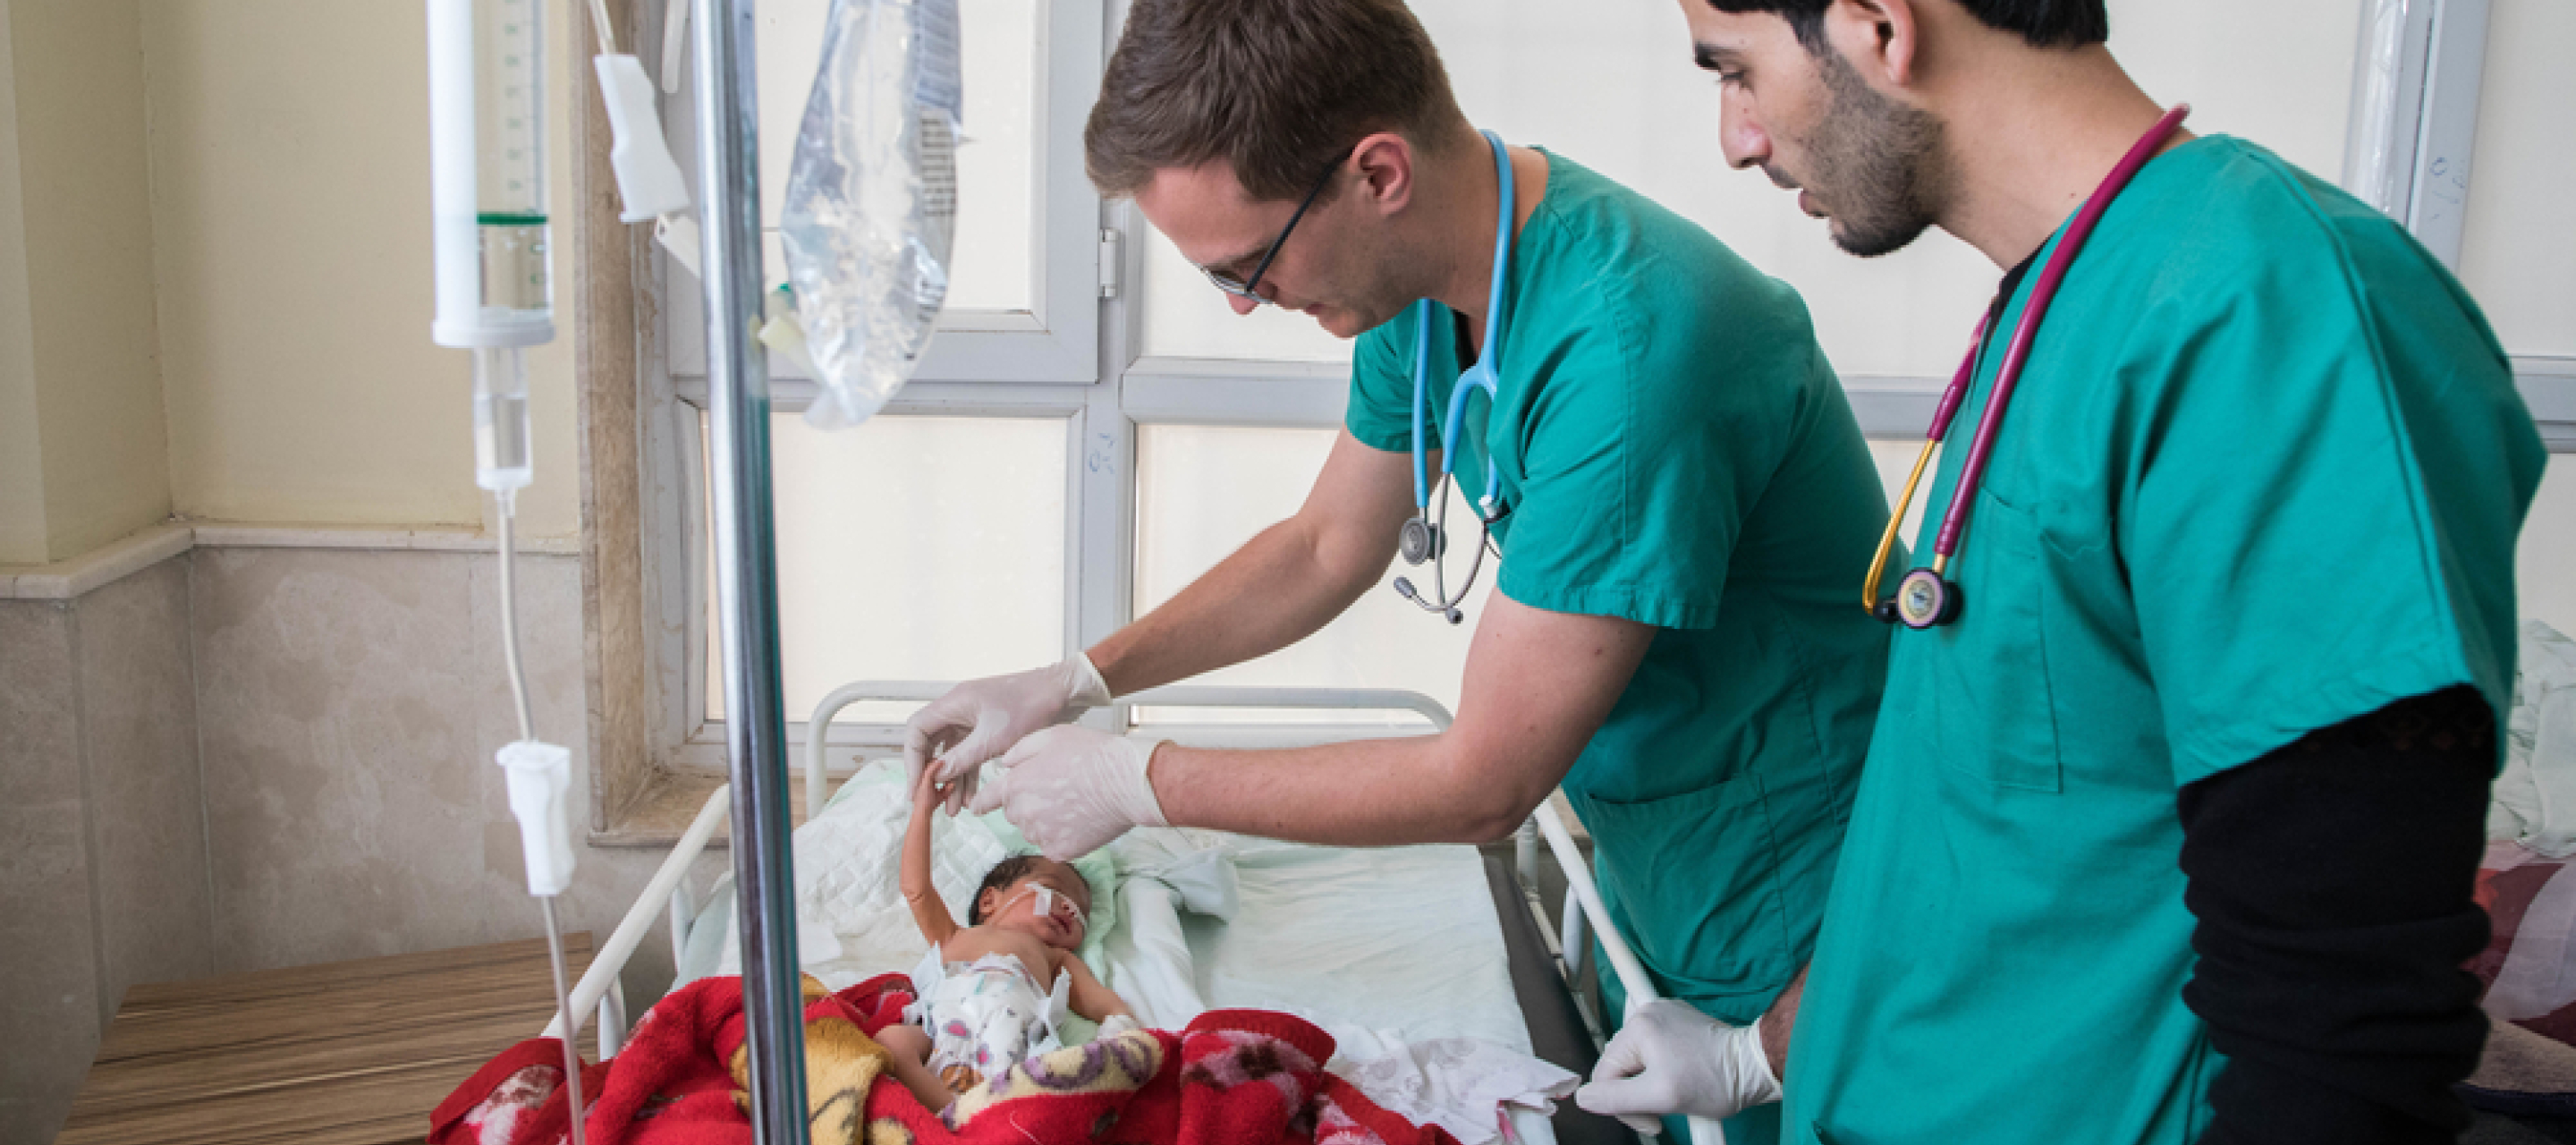 Zwei Mitarbeiter kümmern sich um ein Neugeborenes in einem Bett